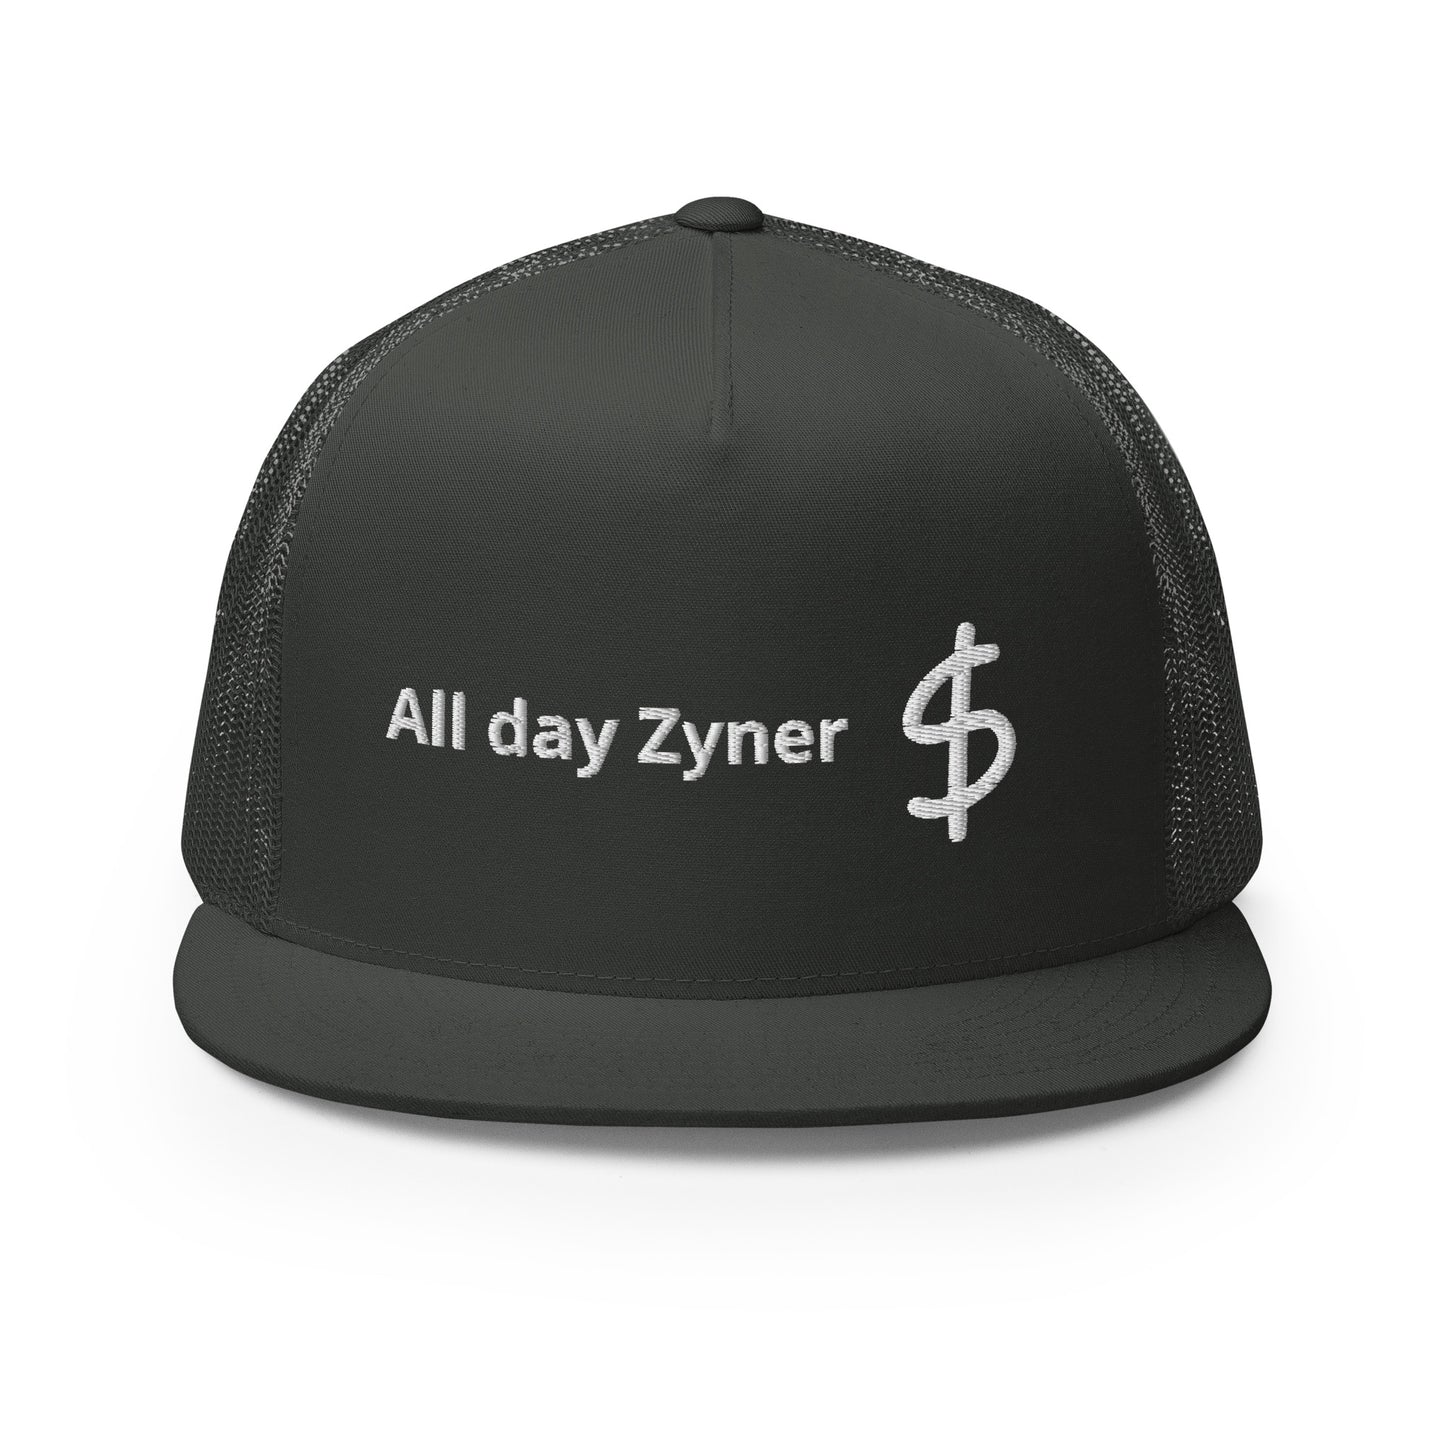 All day Zyner - Trucker Cap